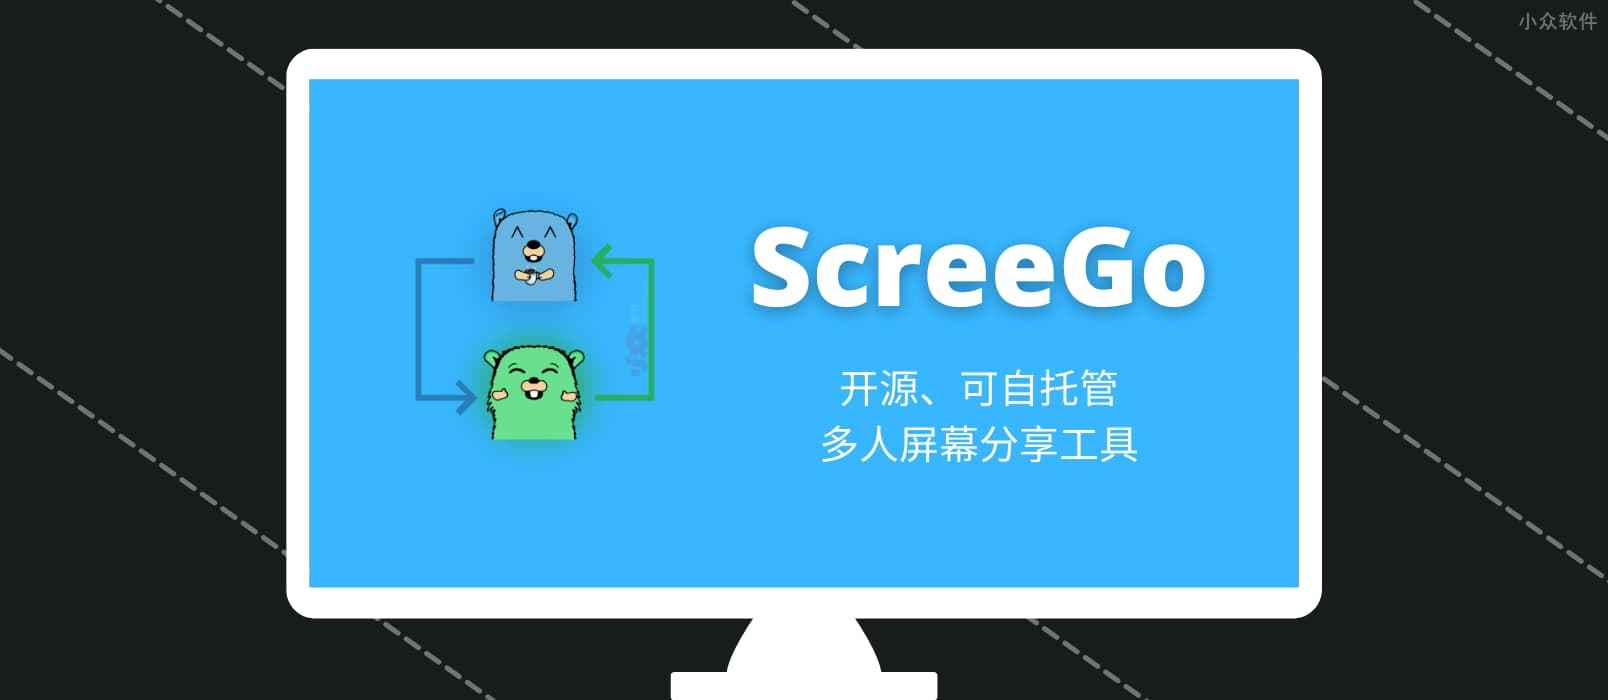 ScreeGo - 开源、可自托管，多人屏幕分享工具